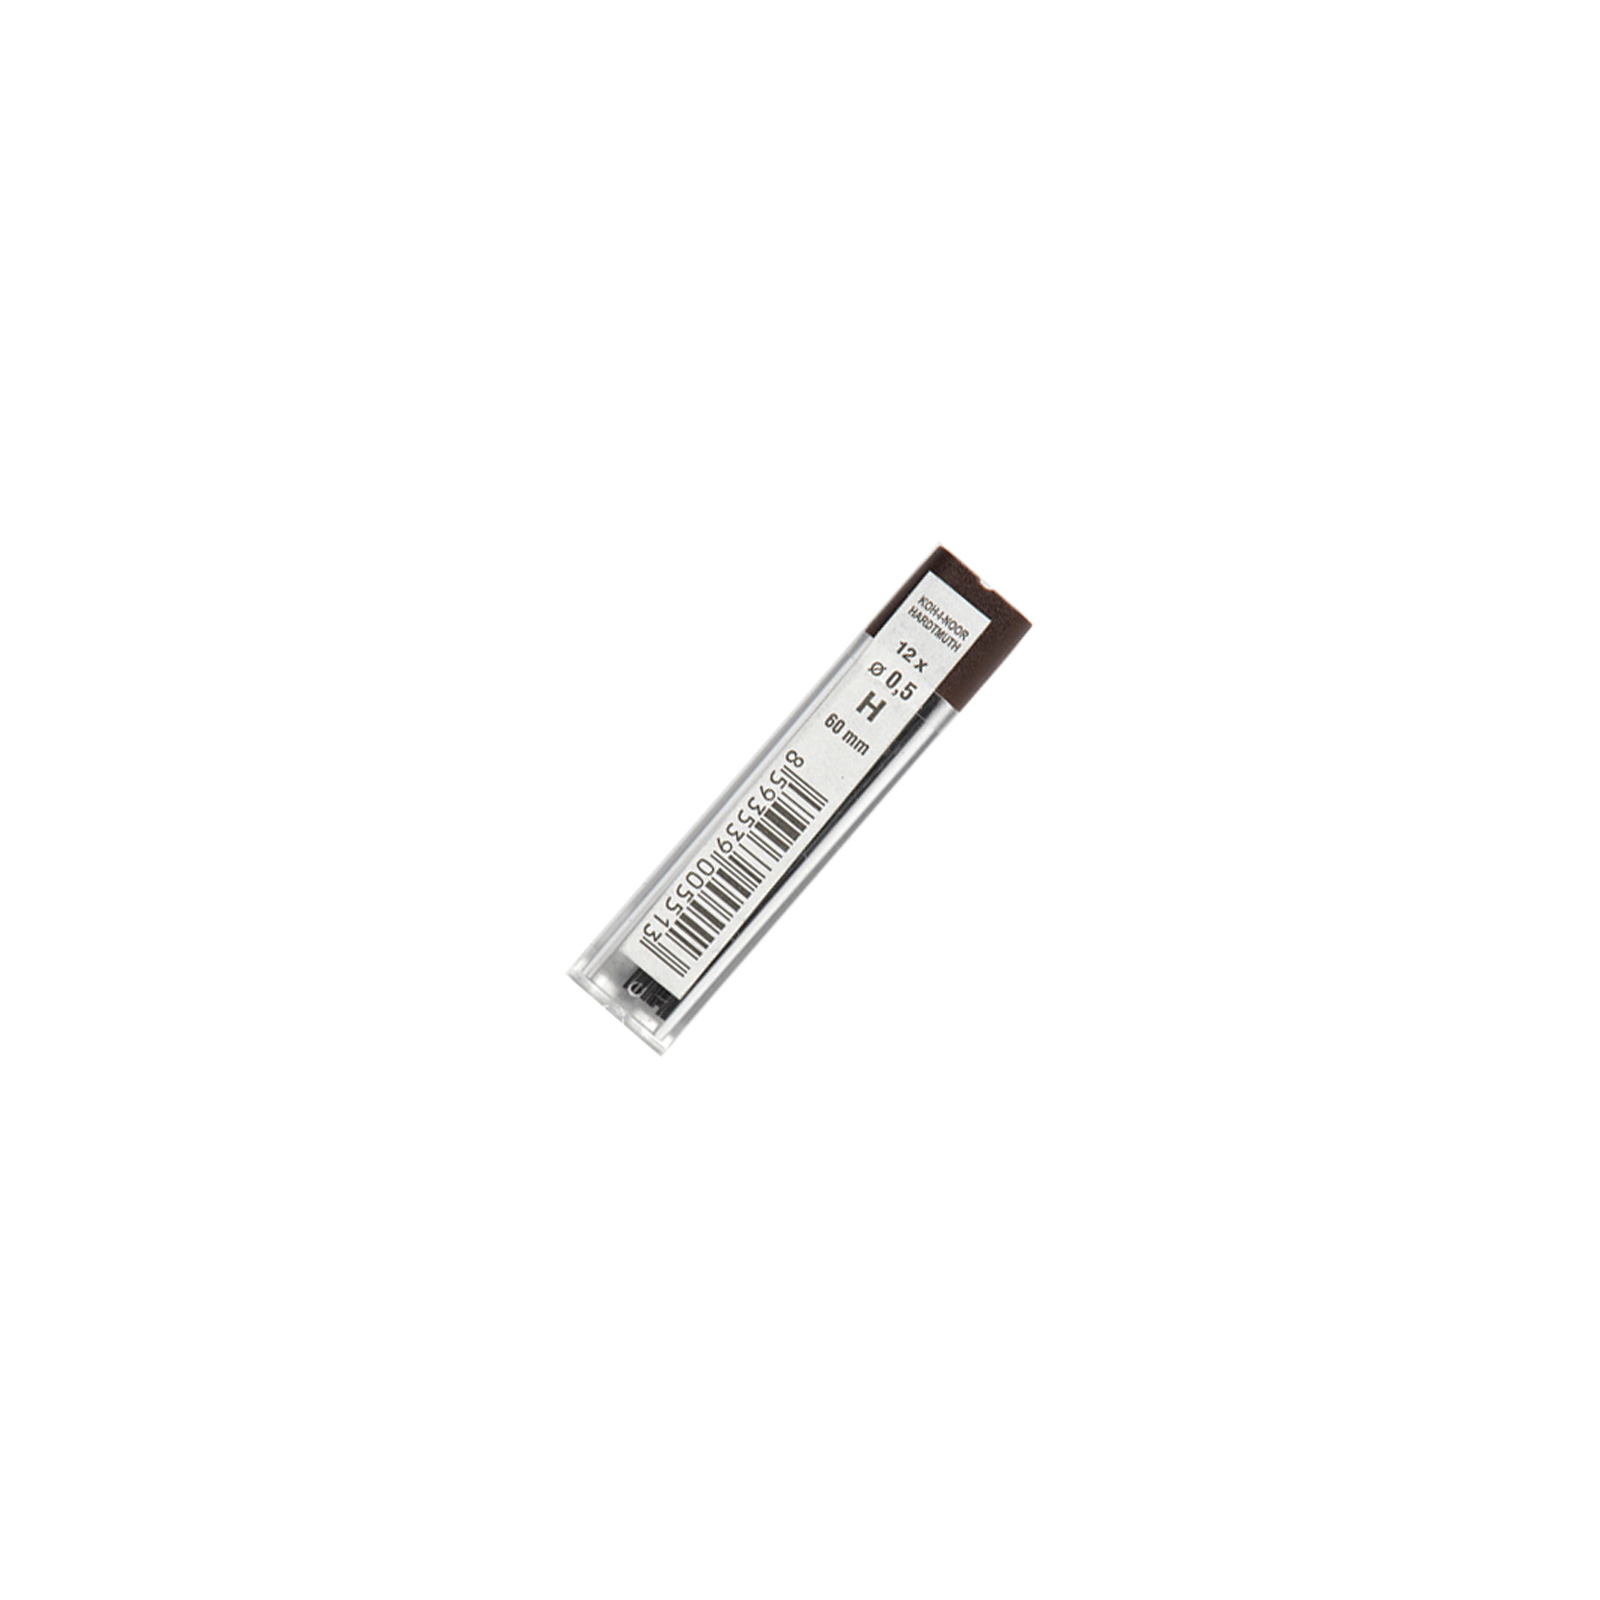 Грифель для механического карандаша Koh-i-Noor 4152.H, 0.5 мм, 12шт (415200H005PK)